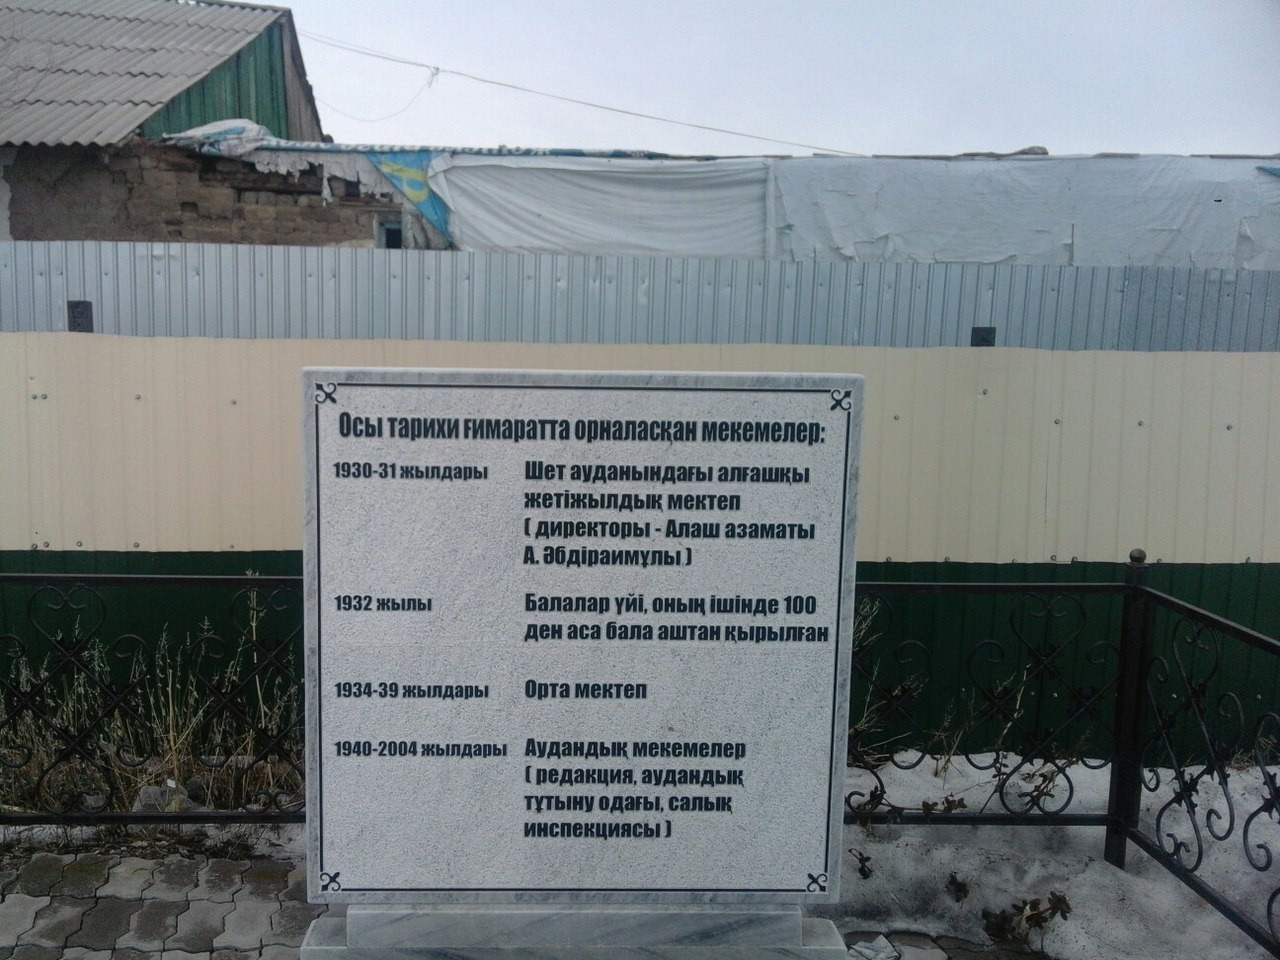 Памятная доска о жертвах голода в Казахстане 1932-1933 гг. Село Аксу-Аюлы, Шетский район, Карагандинская область.